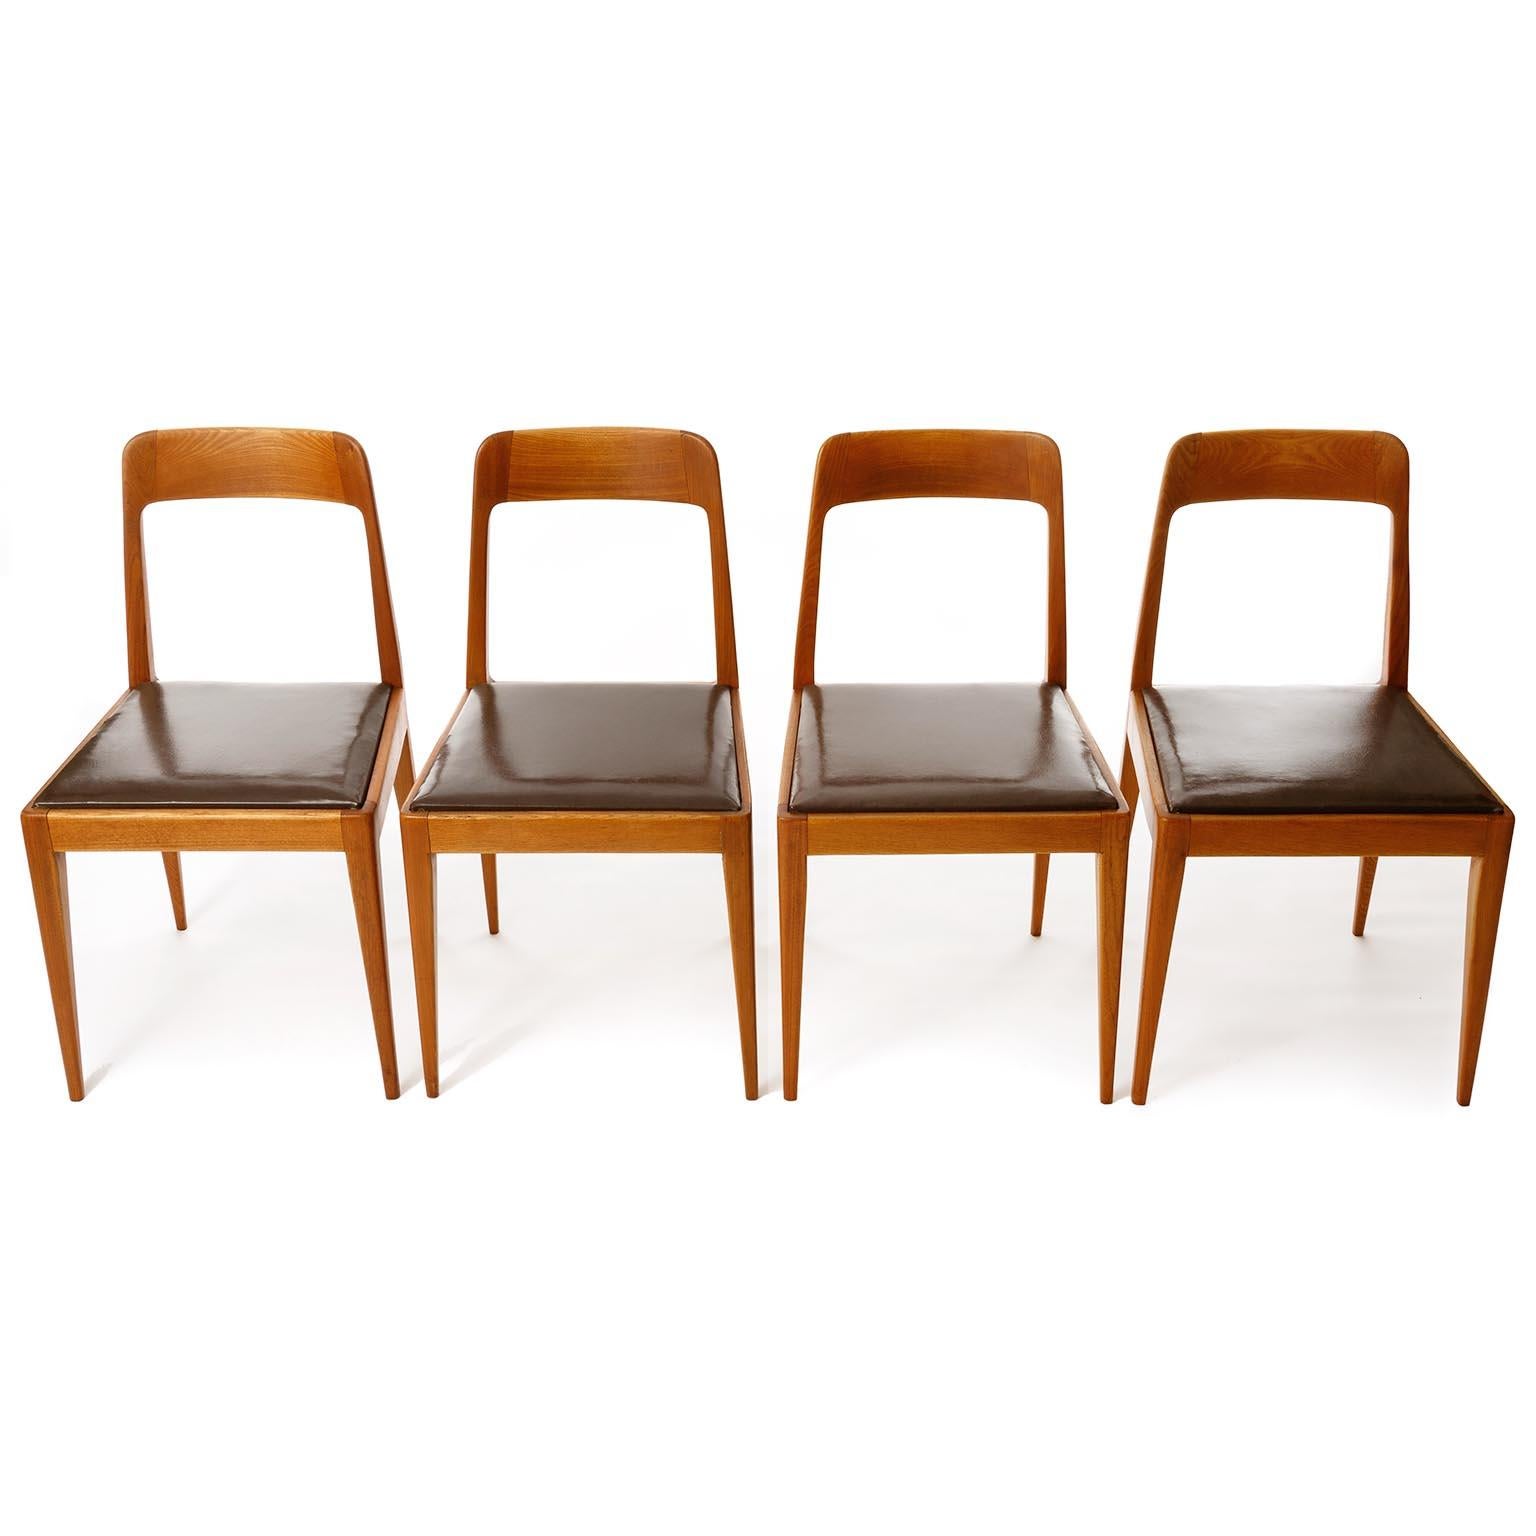 Rare ensemble de quatre chaises de salle à manger ou d'appoint modèle 'A7' de Carl Auböck, Vienne, Autriche, fabriquées au milieu du siècle, vers 1950.
Les chaises sont fabriquées en bois huilé aux tons chauds. Le type de bois est probablement de